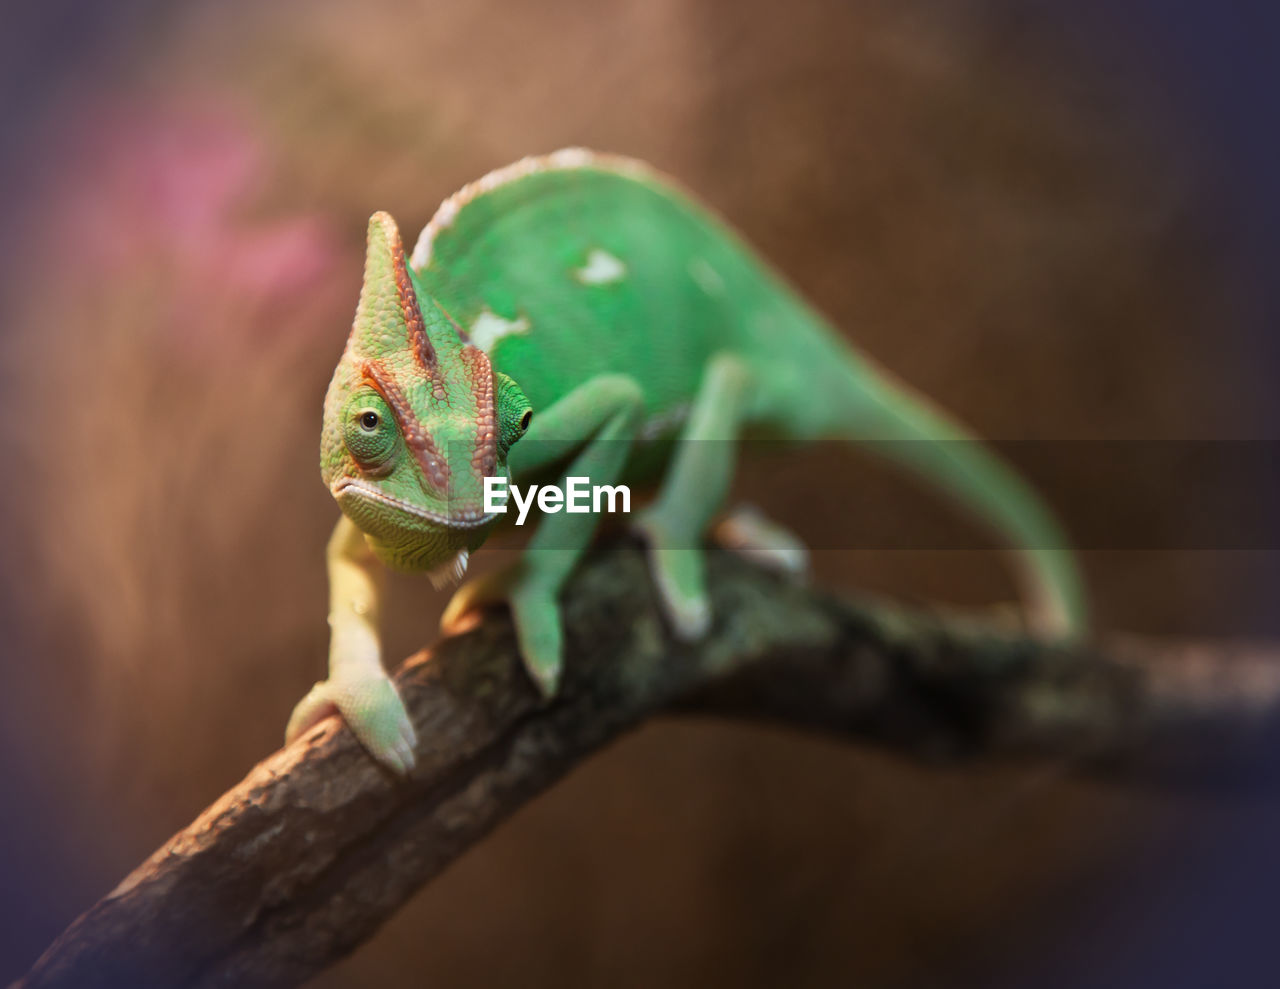 Veiled chameleon on tree branch